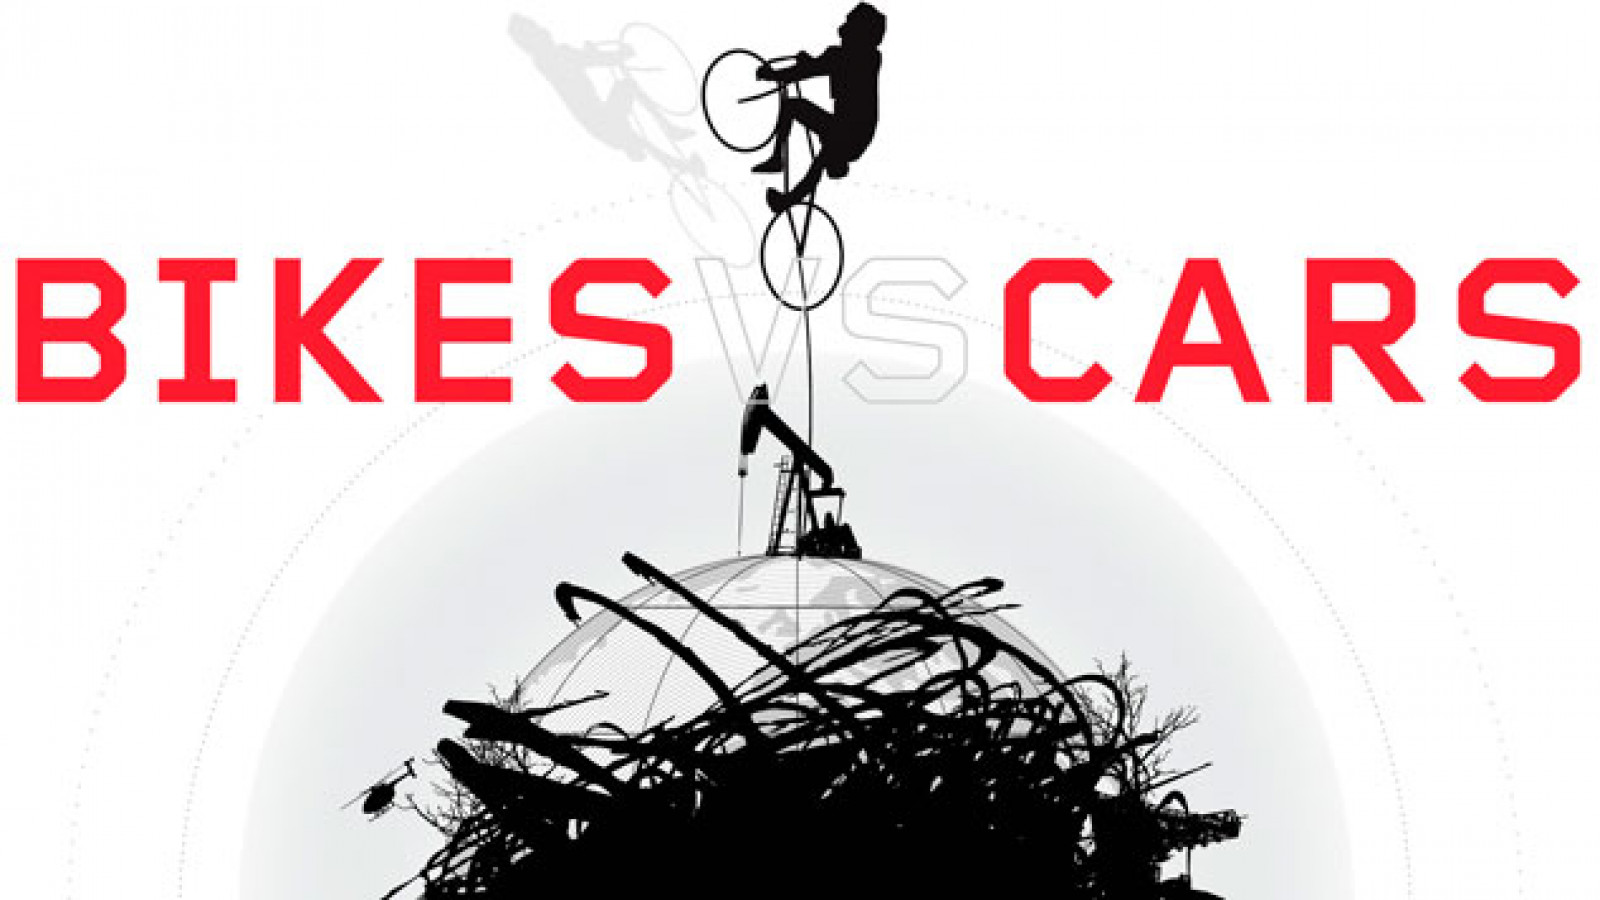 Urban TV 2015 continúa su ciclo de proyecciones con el documental “Bikes vs Cars”.